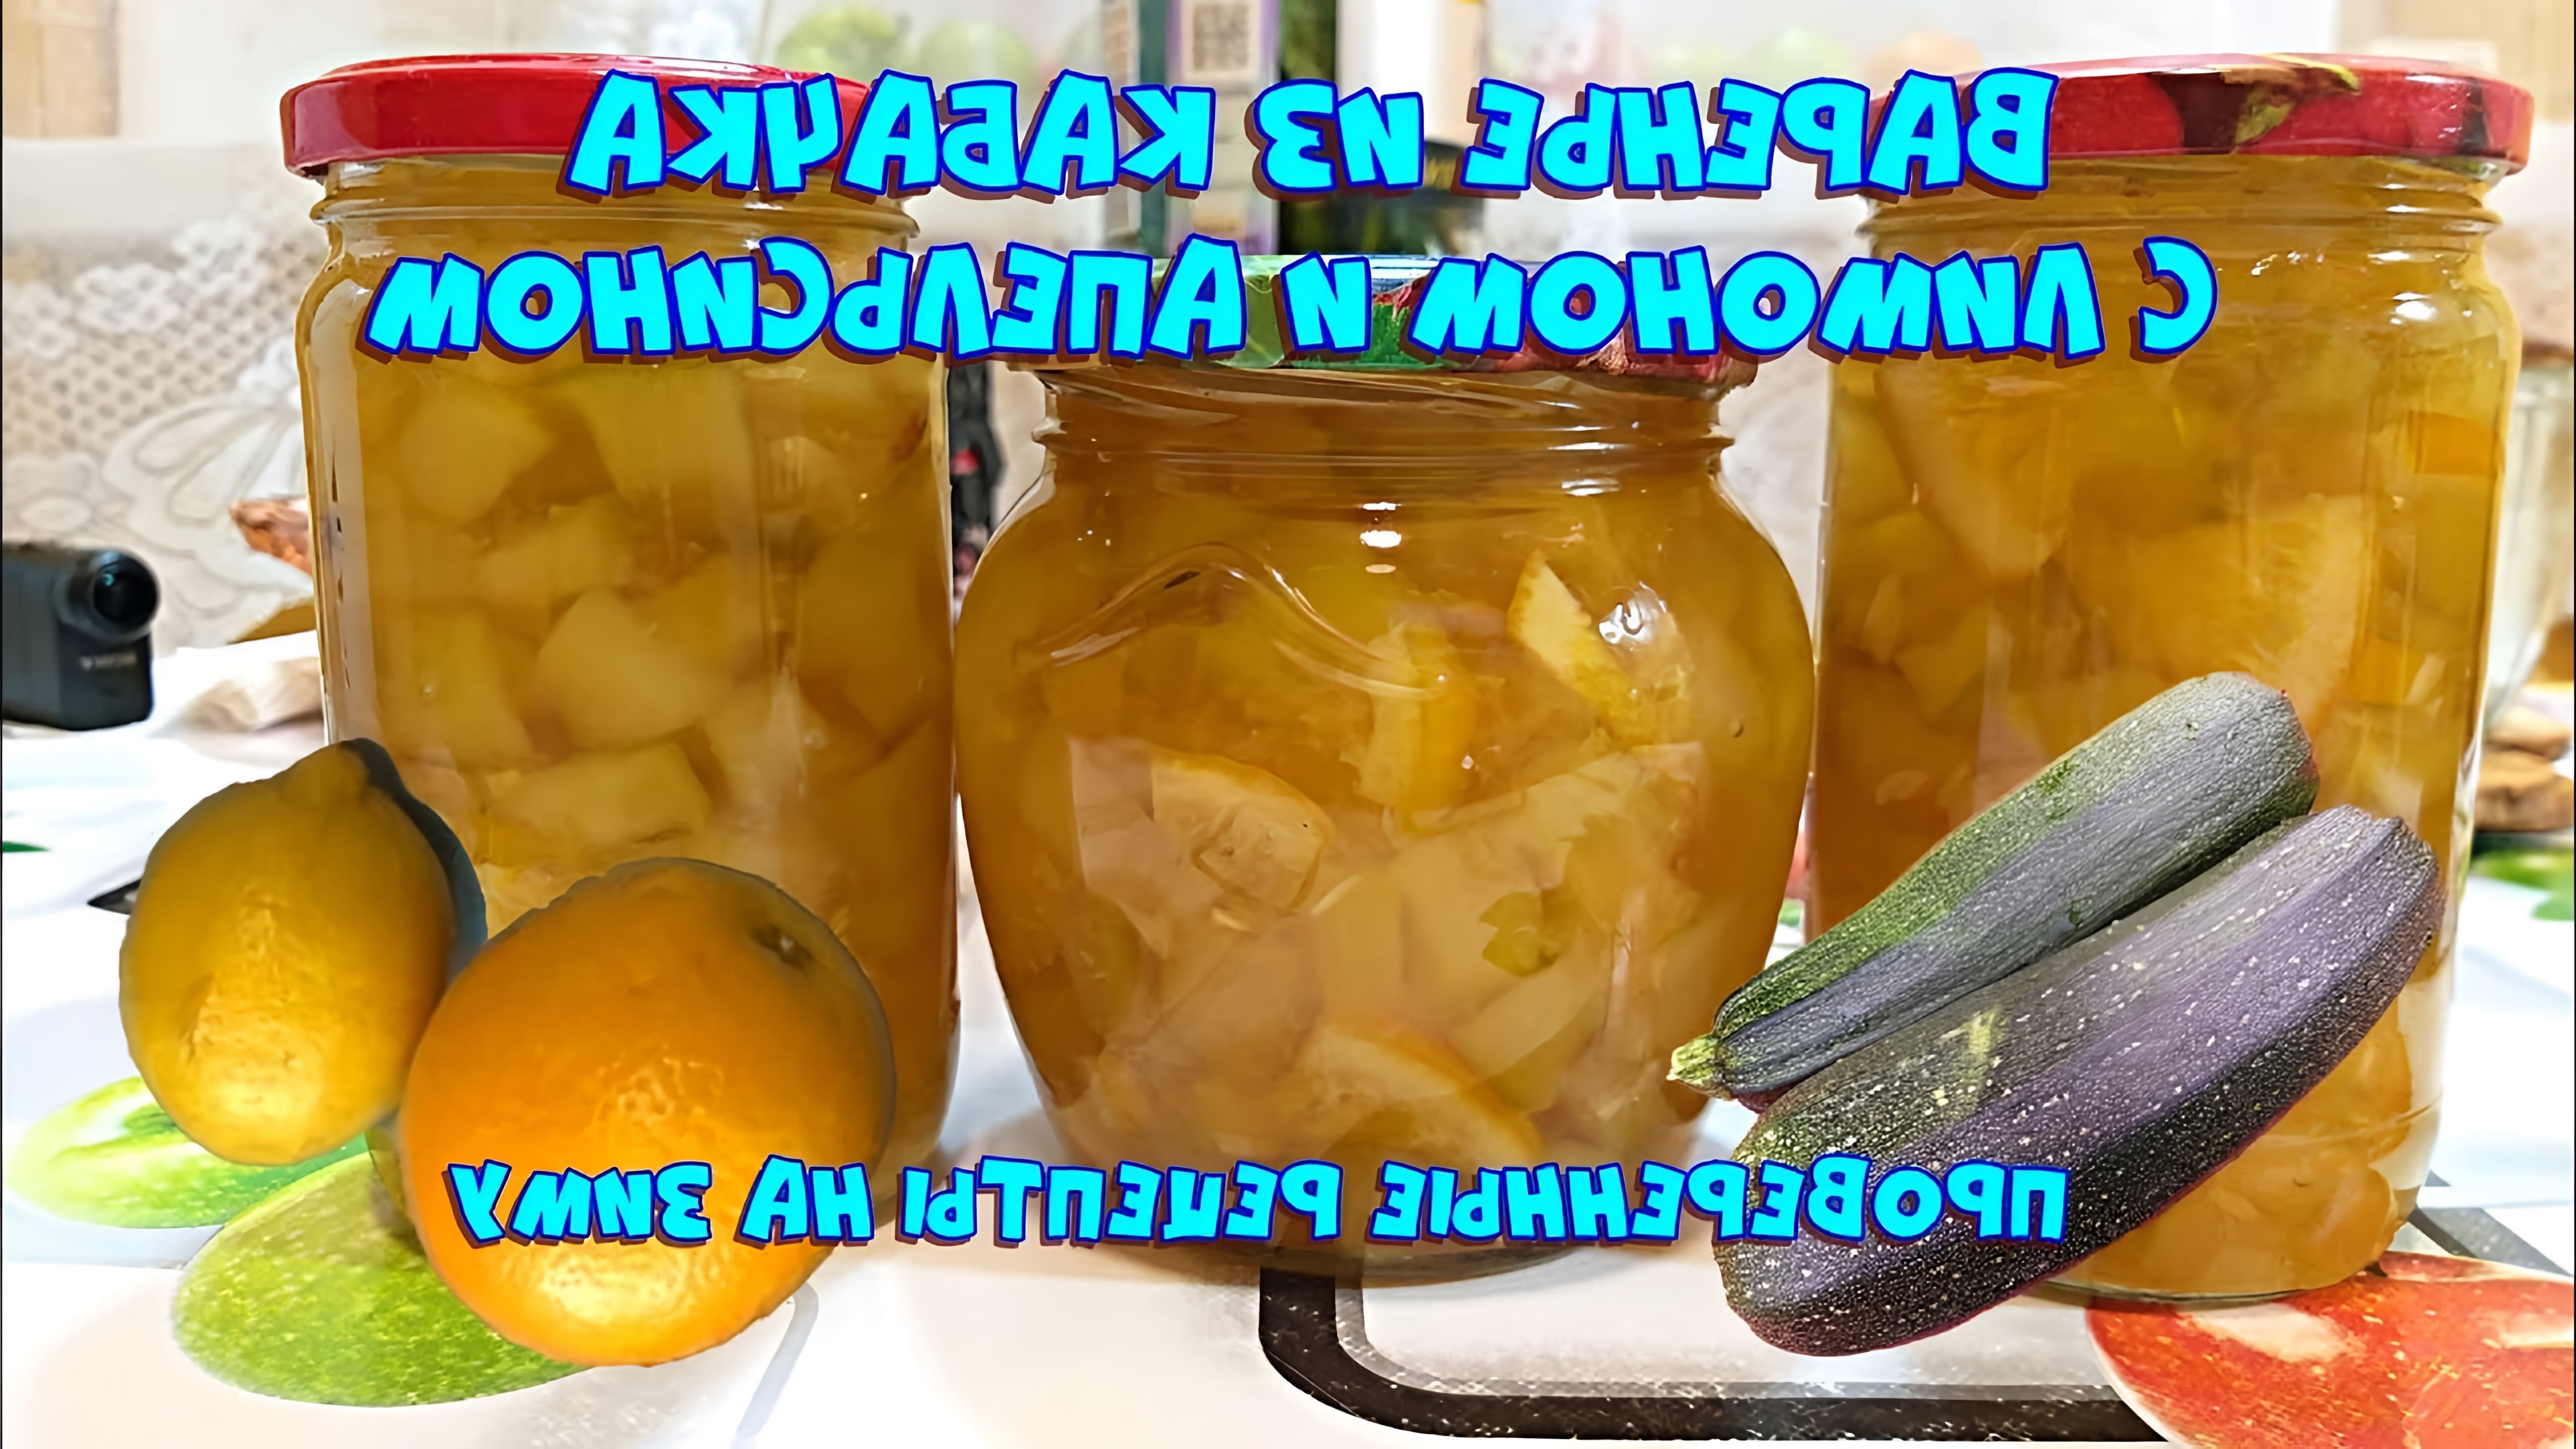 В этом видео демонстрируется процесс приготовления варенья из кабачков с апельсином и лимоном